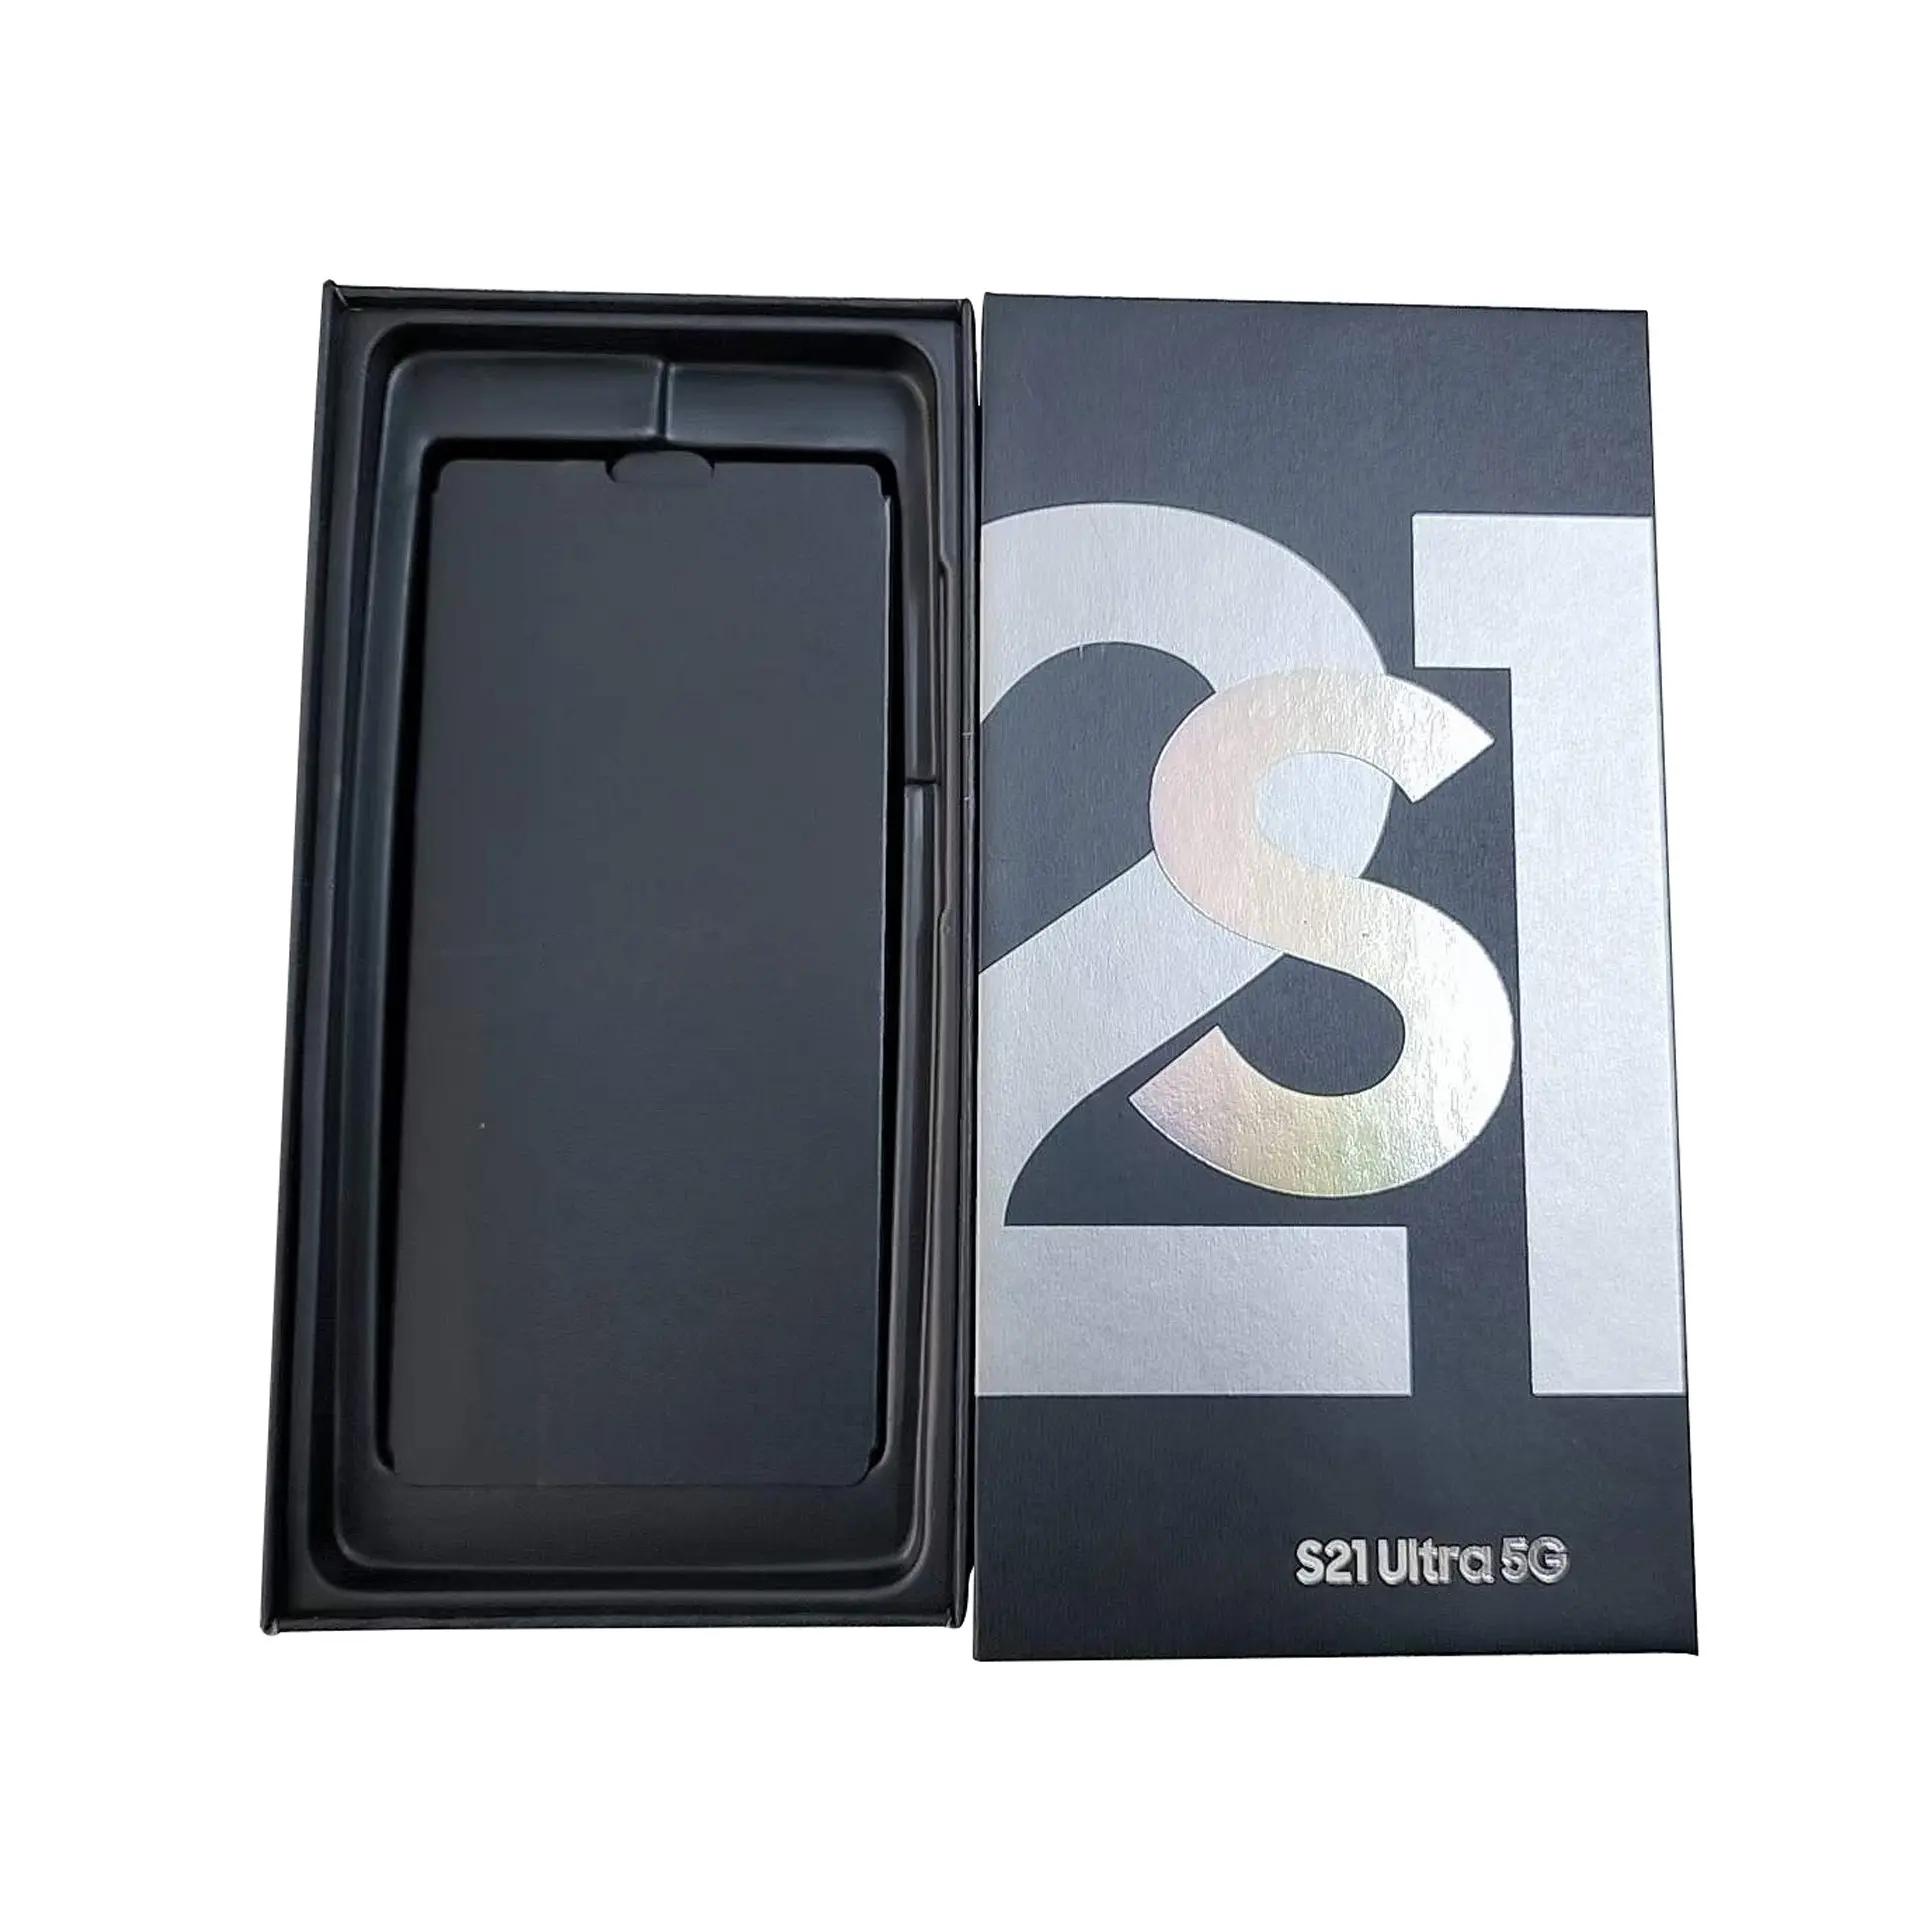 휴대 전화 포장 상자 Pvc 종이 포장 상자 전화 케이스 삼성 S21U 삼성 S21 + 포장 상자